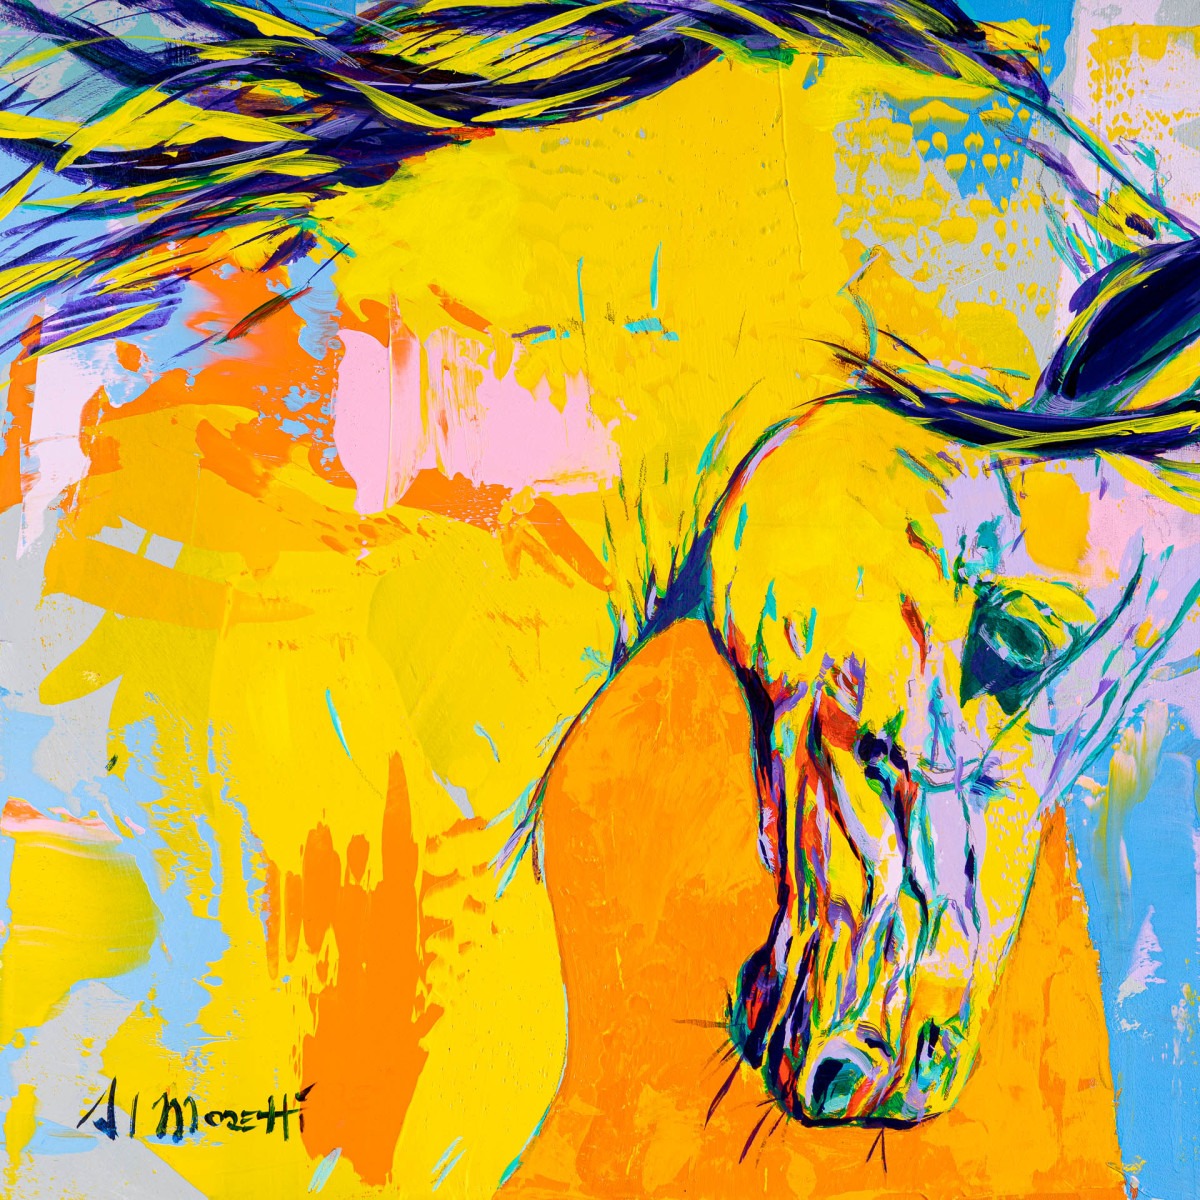 Horse Head by Al Moretti 